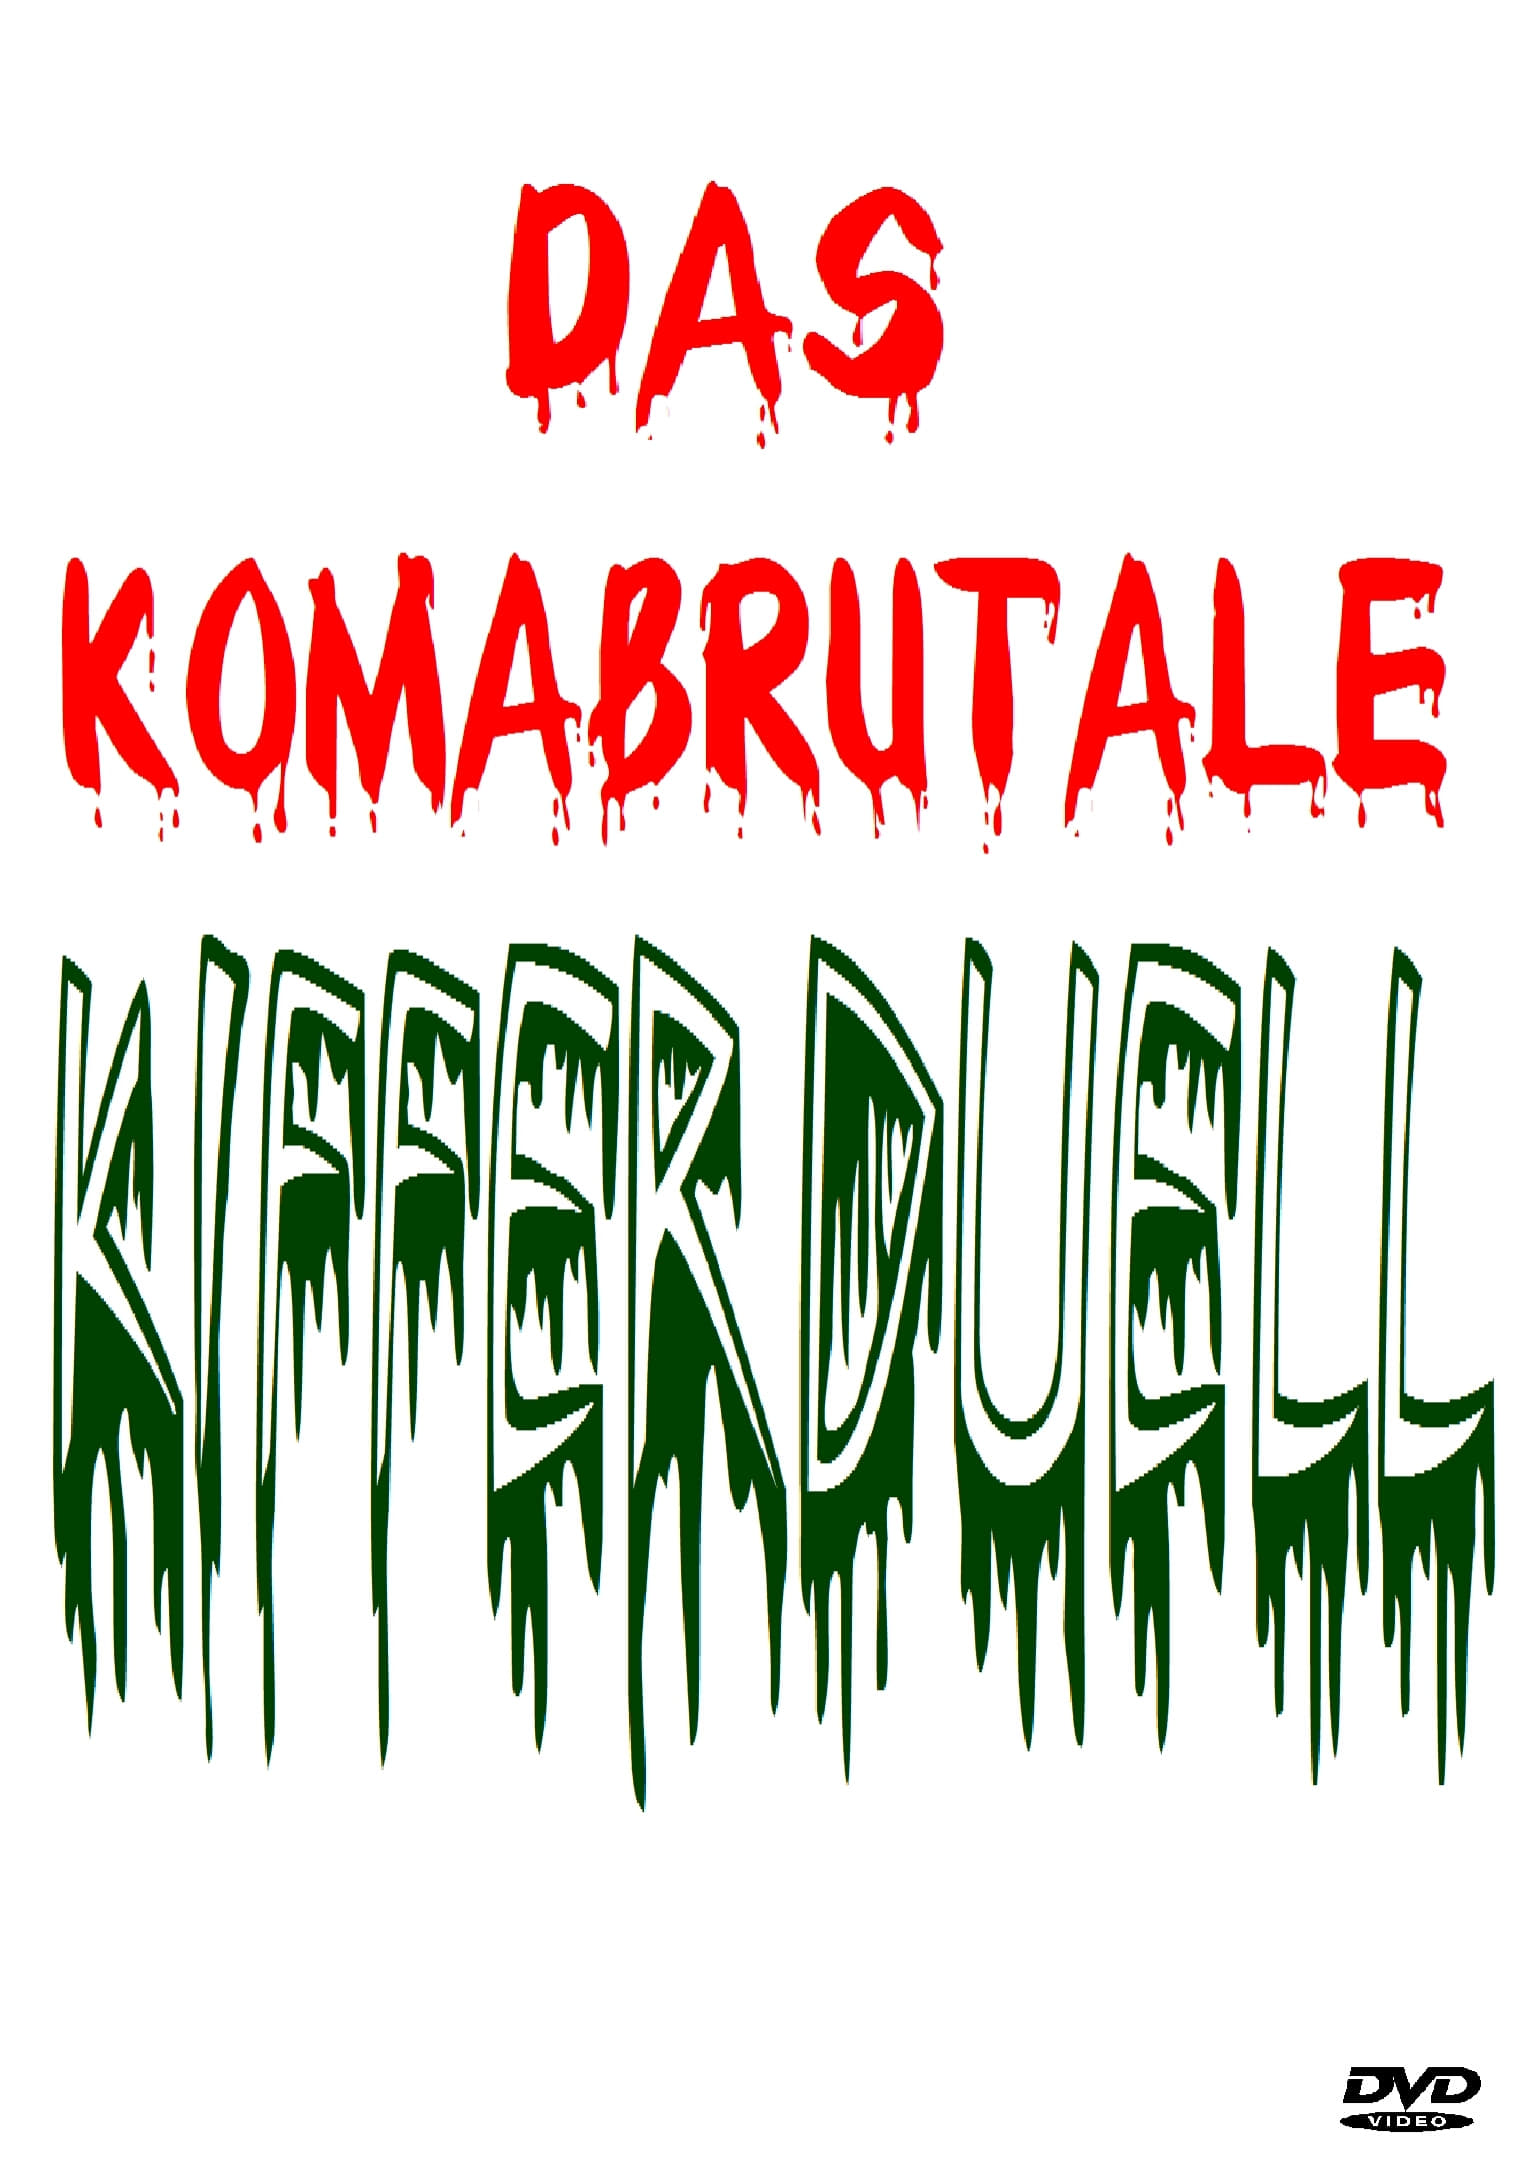 Das Komabrutale Kifferduell